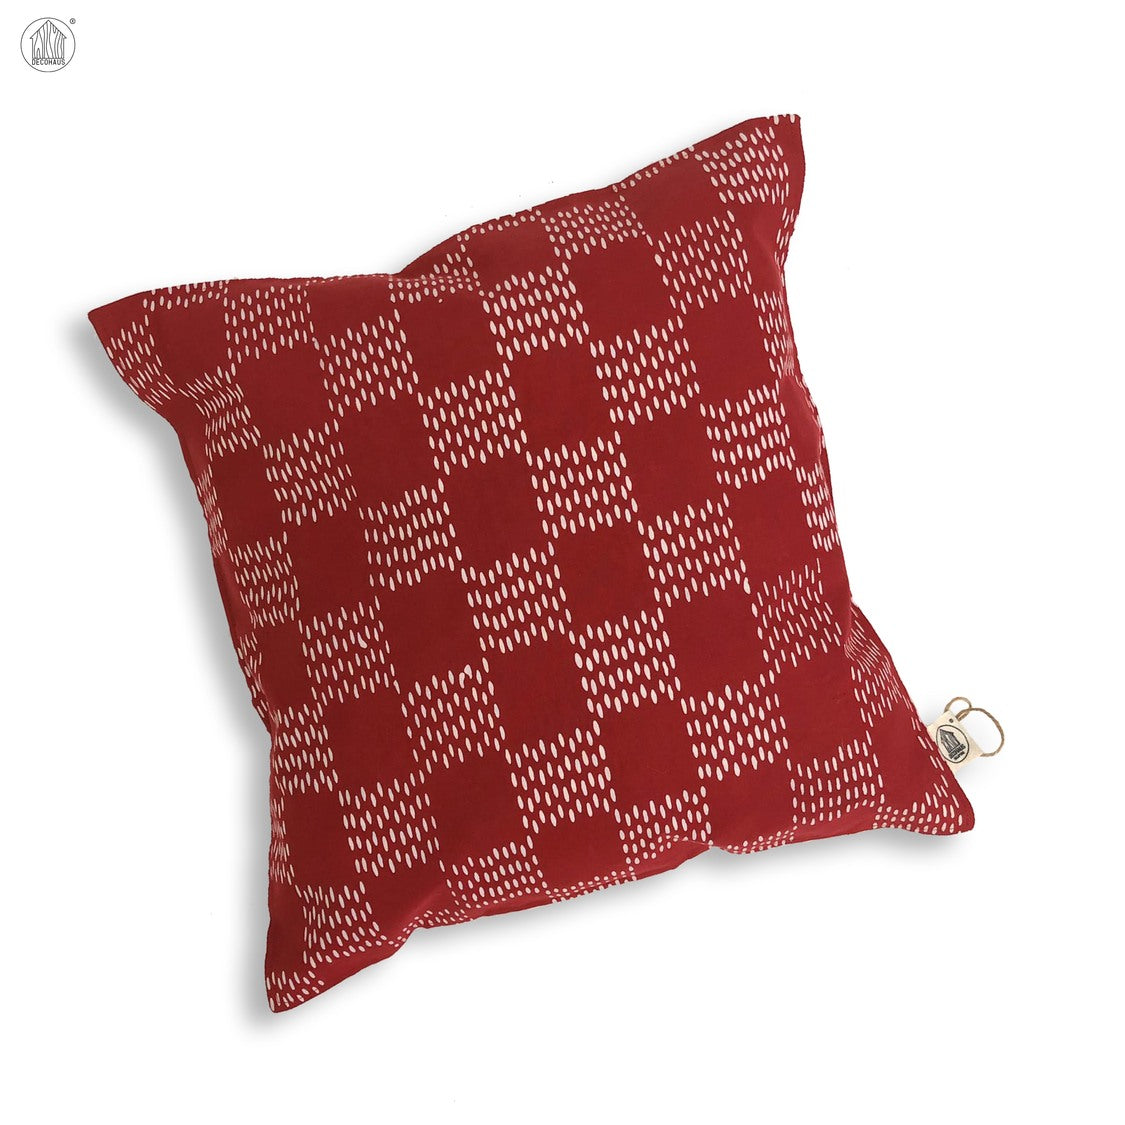 RINTIK HUJAN Batik Handstamp Cushion Cover in Red